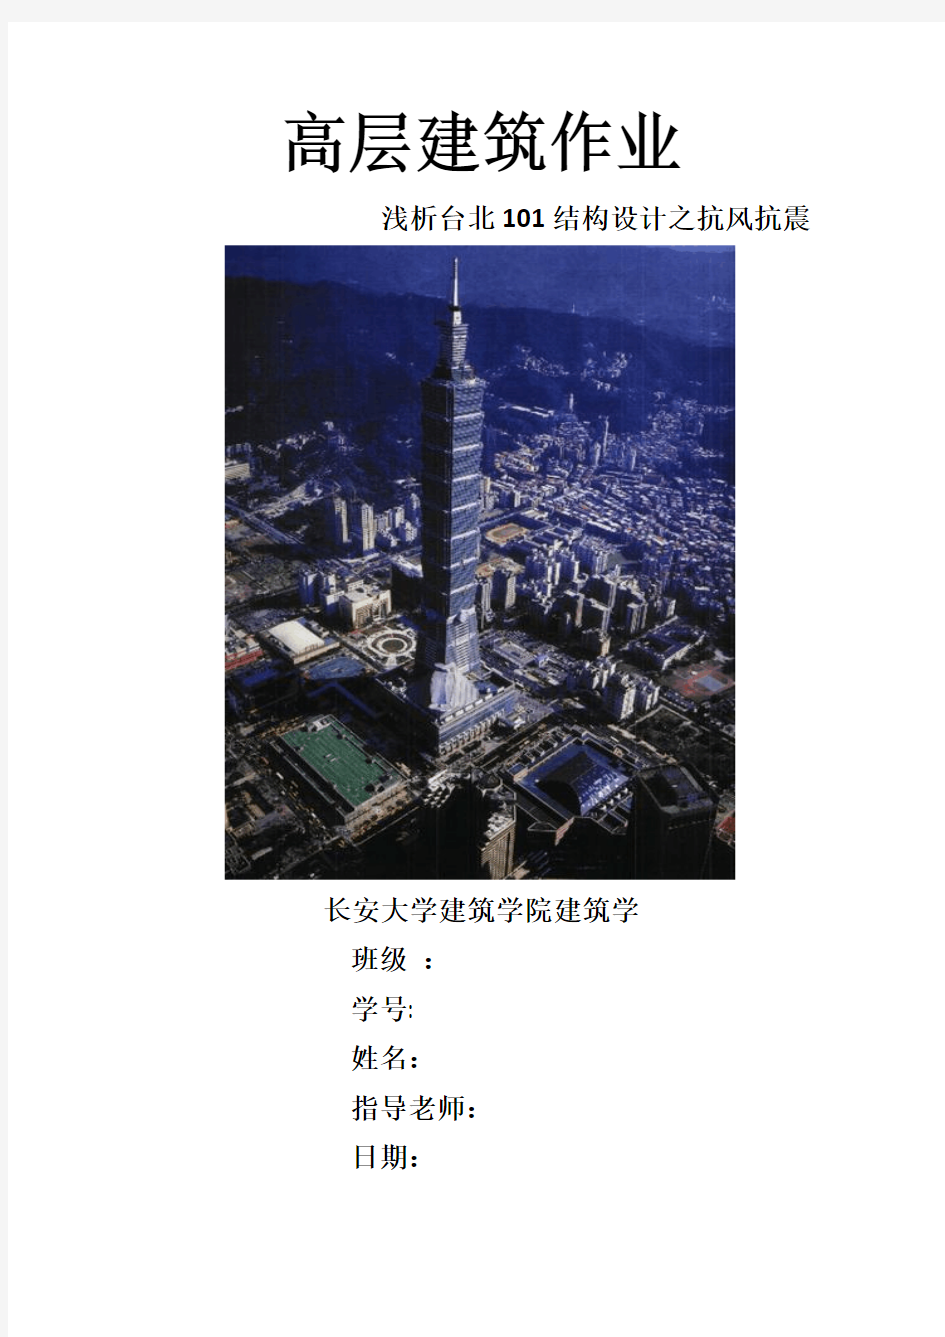 台北101抗震抗风设计